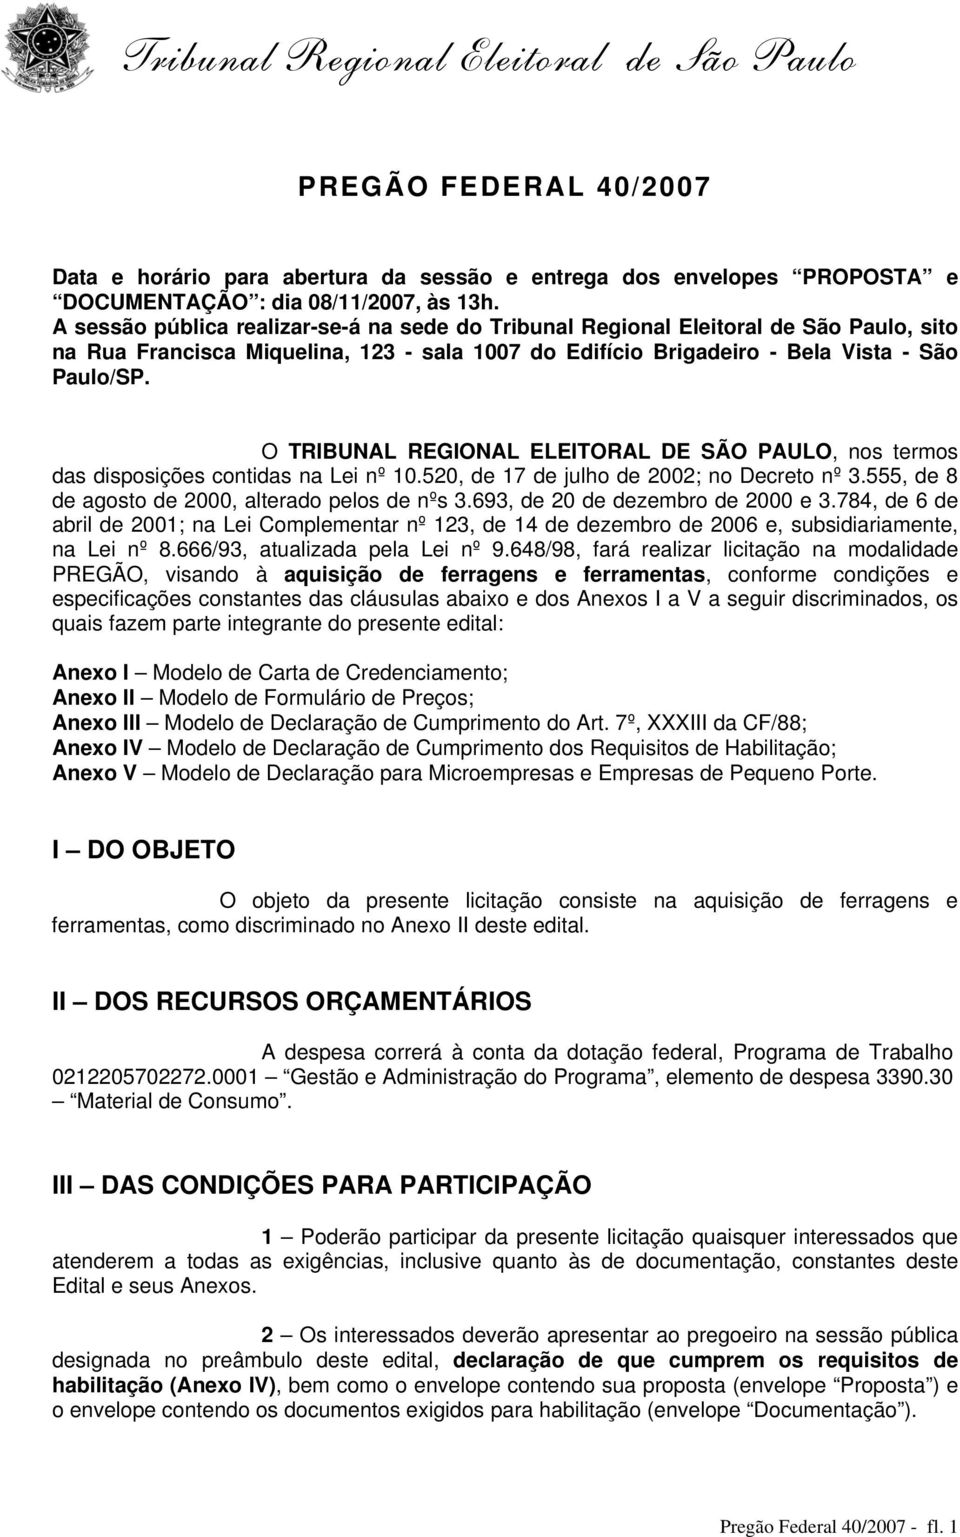 O TRIBUNAL REGIONAL ELEITORAL DE SÃO PAULO, nos termos das disposições contidas na Lei nº.520, de 17 de julho de 20; no Decreto nº 3.555, de 8 de agosto de 2000, alterado pelos de nºs 3.